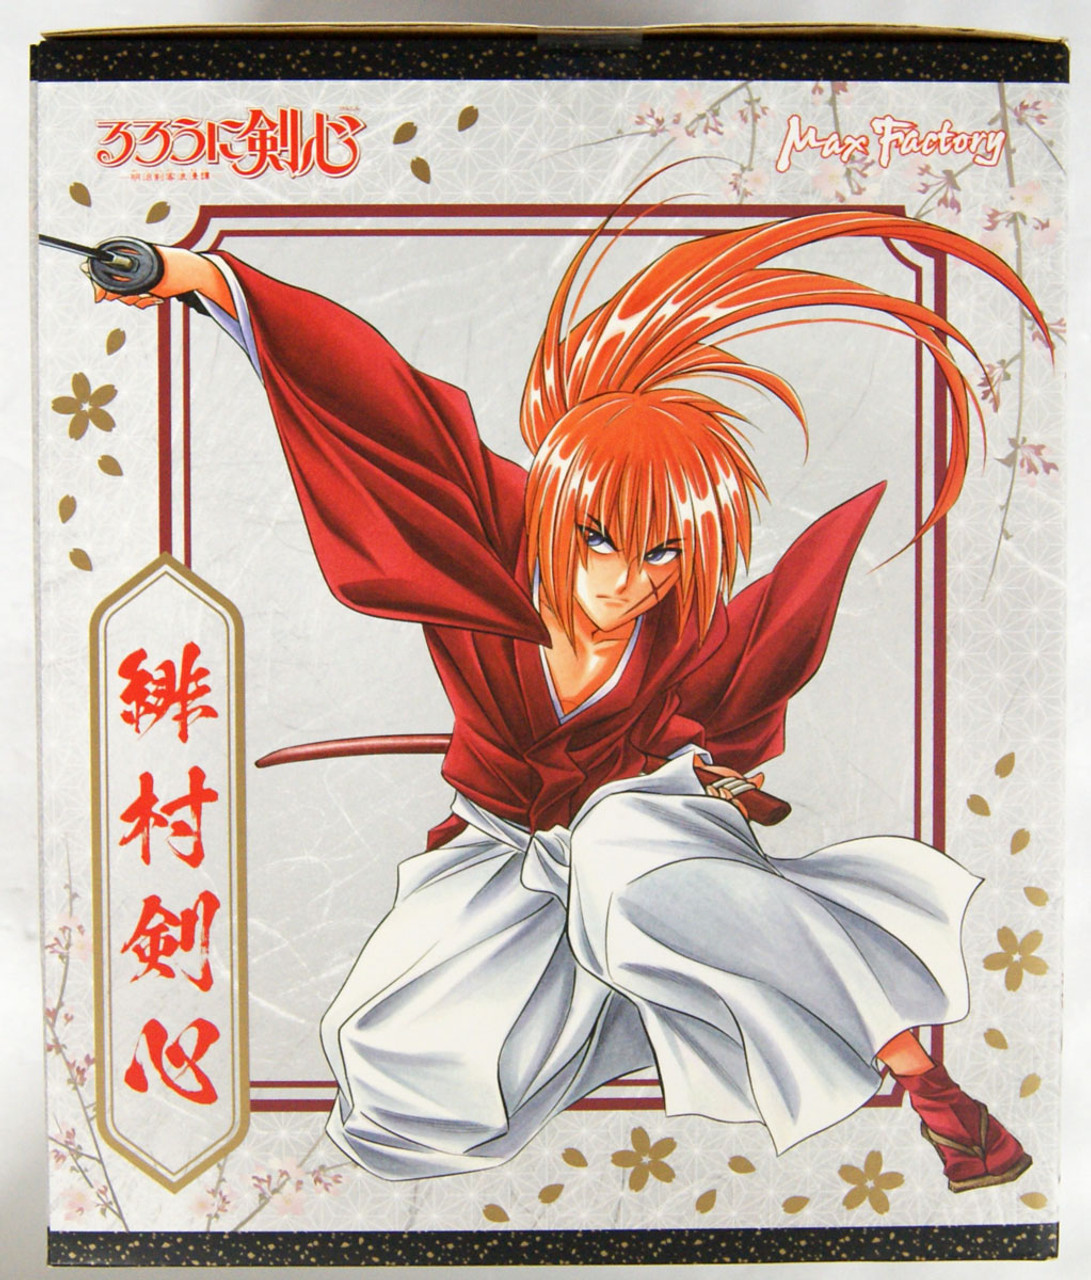 himura kenshin (rurouni kenshin) drawn by bikkusama